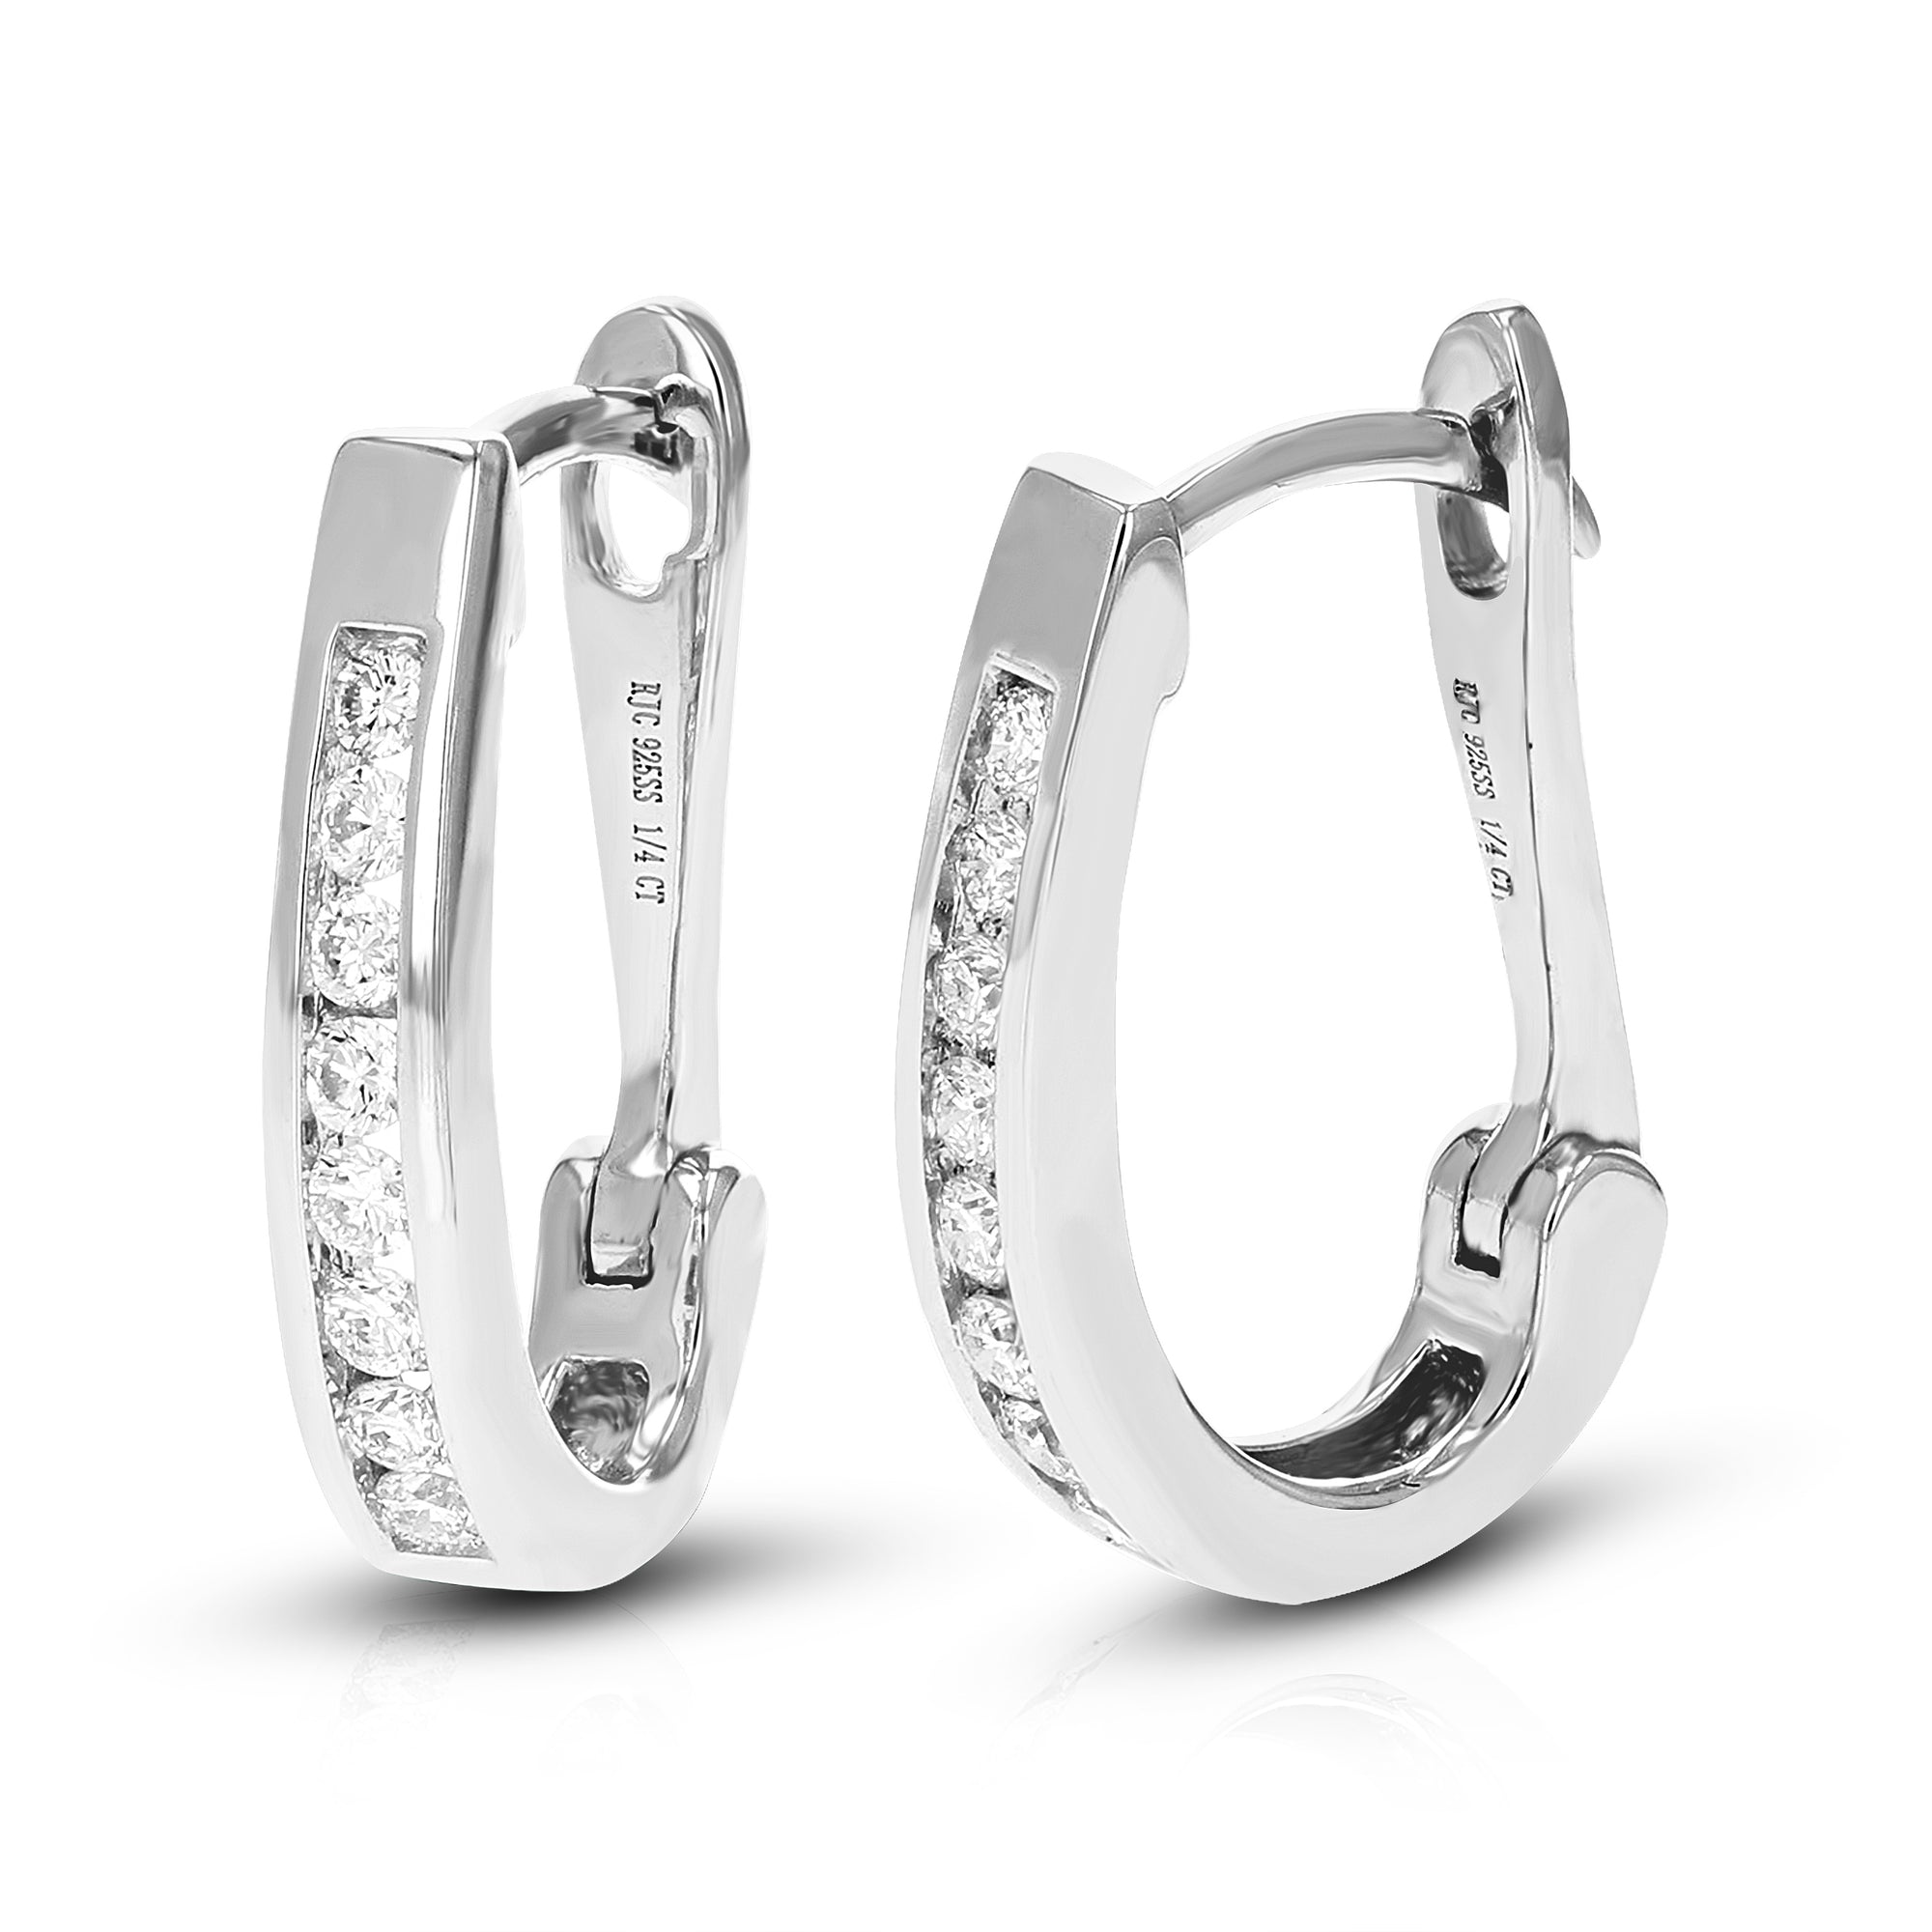 1/4 cttw Diamond Hoop Earrings for Women, Round Lab Grown Diamond Earrings in .925 Sterling Silver, Channel Setting, 2/3 Inch